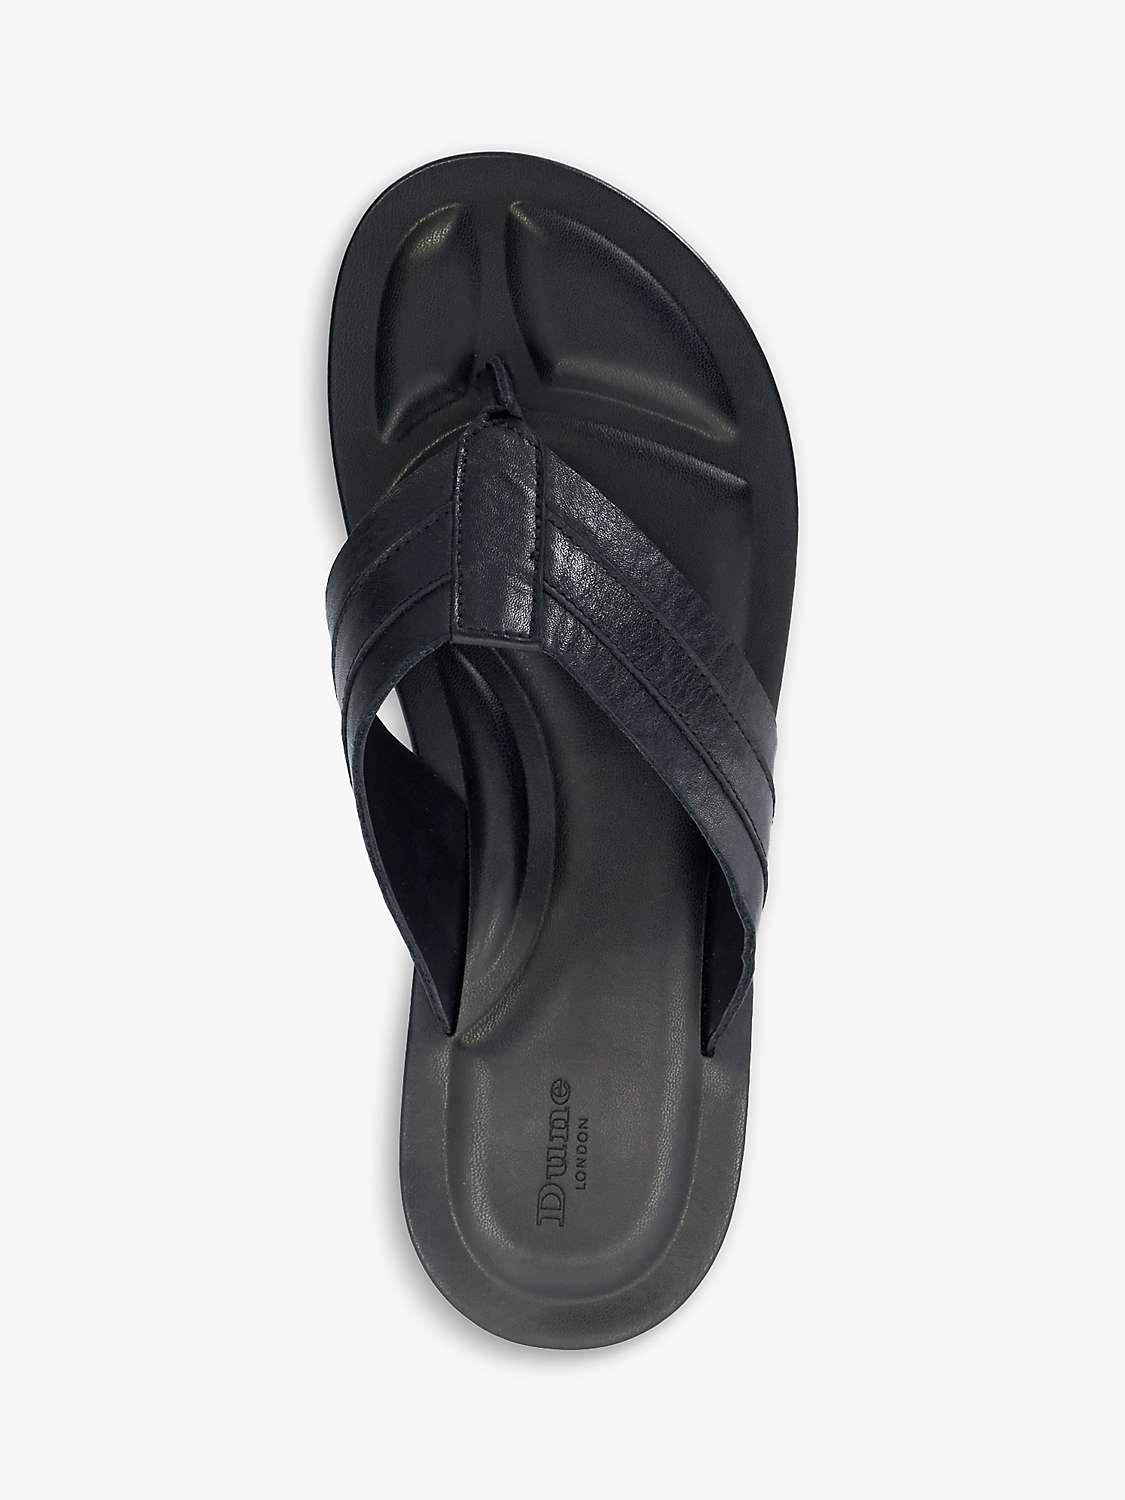 Buy Dune Fredos Leather Flip Flops, Black Online at johnlewis.com